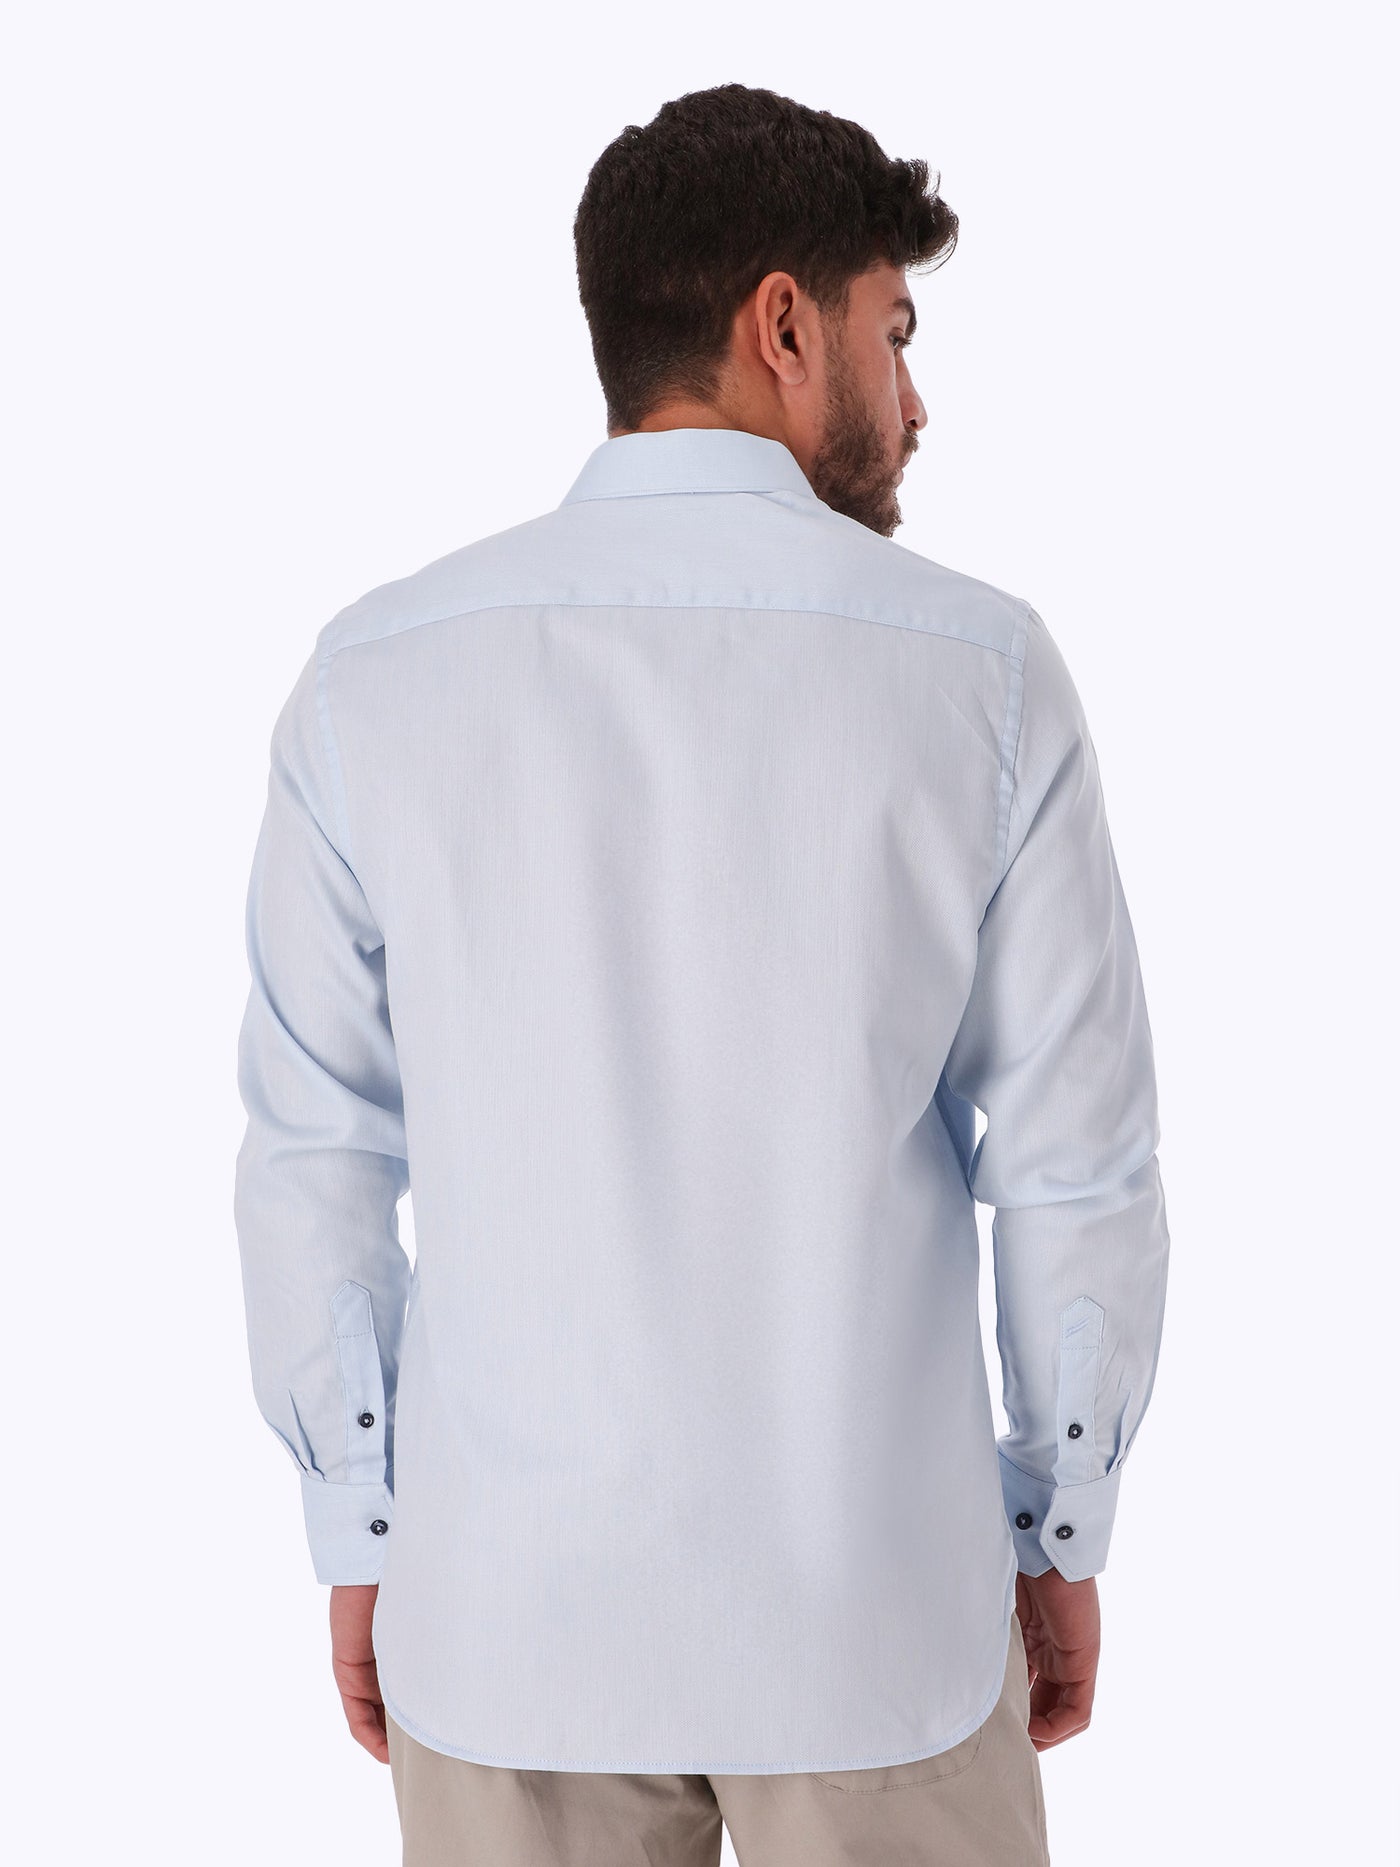 Shirt - Textured - Contrast Button